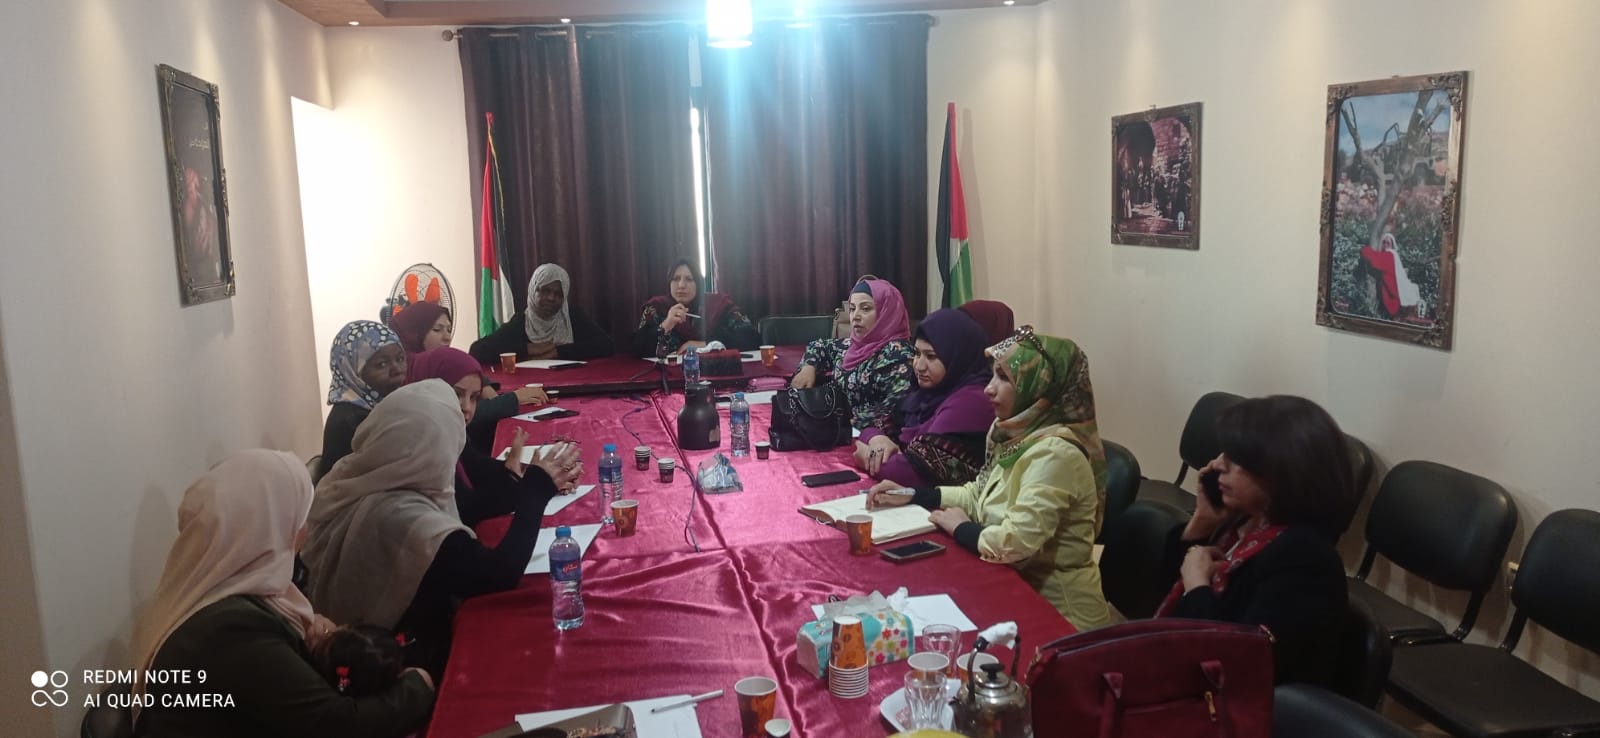 منتدى الأكاديميات الفلسطينيات يعقد اجتماعًا في غزة 